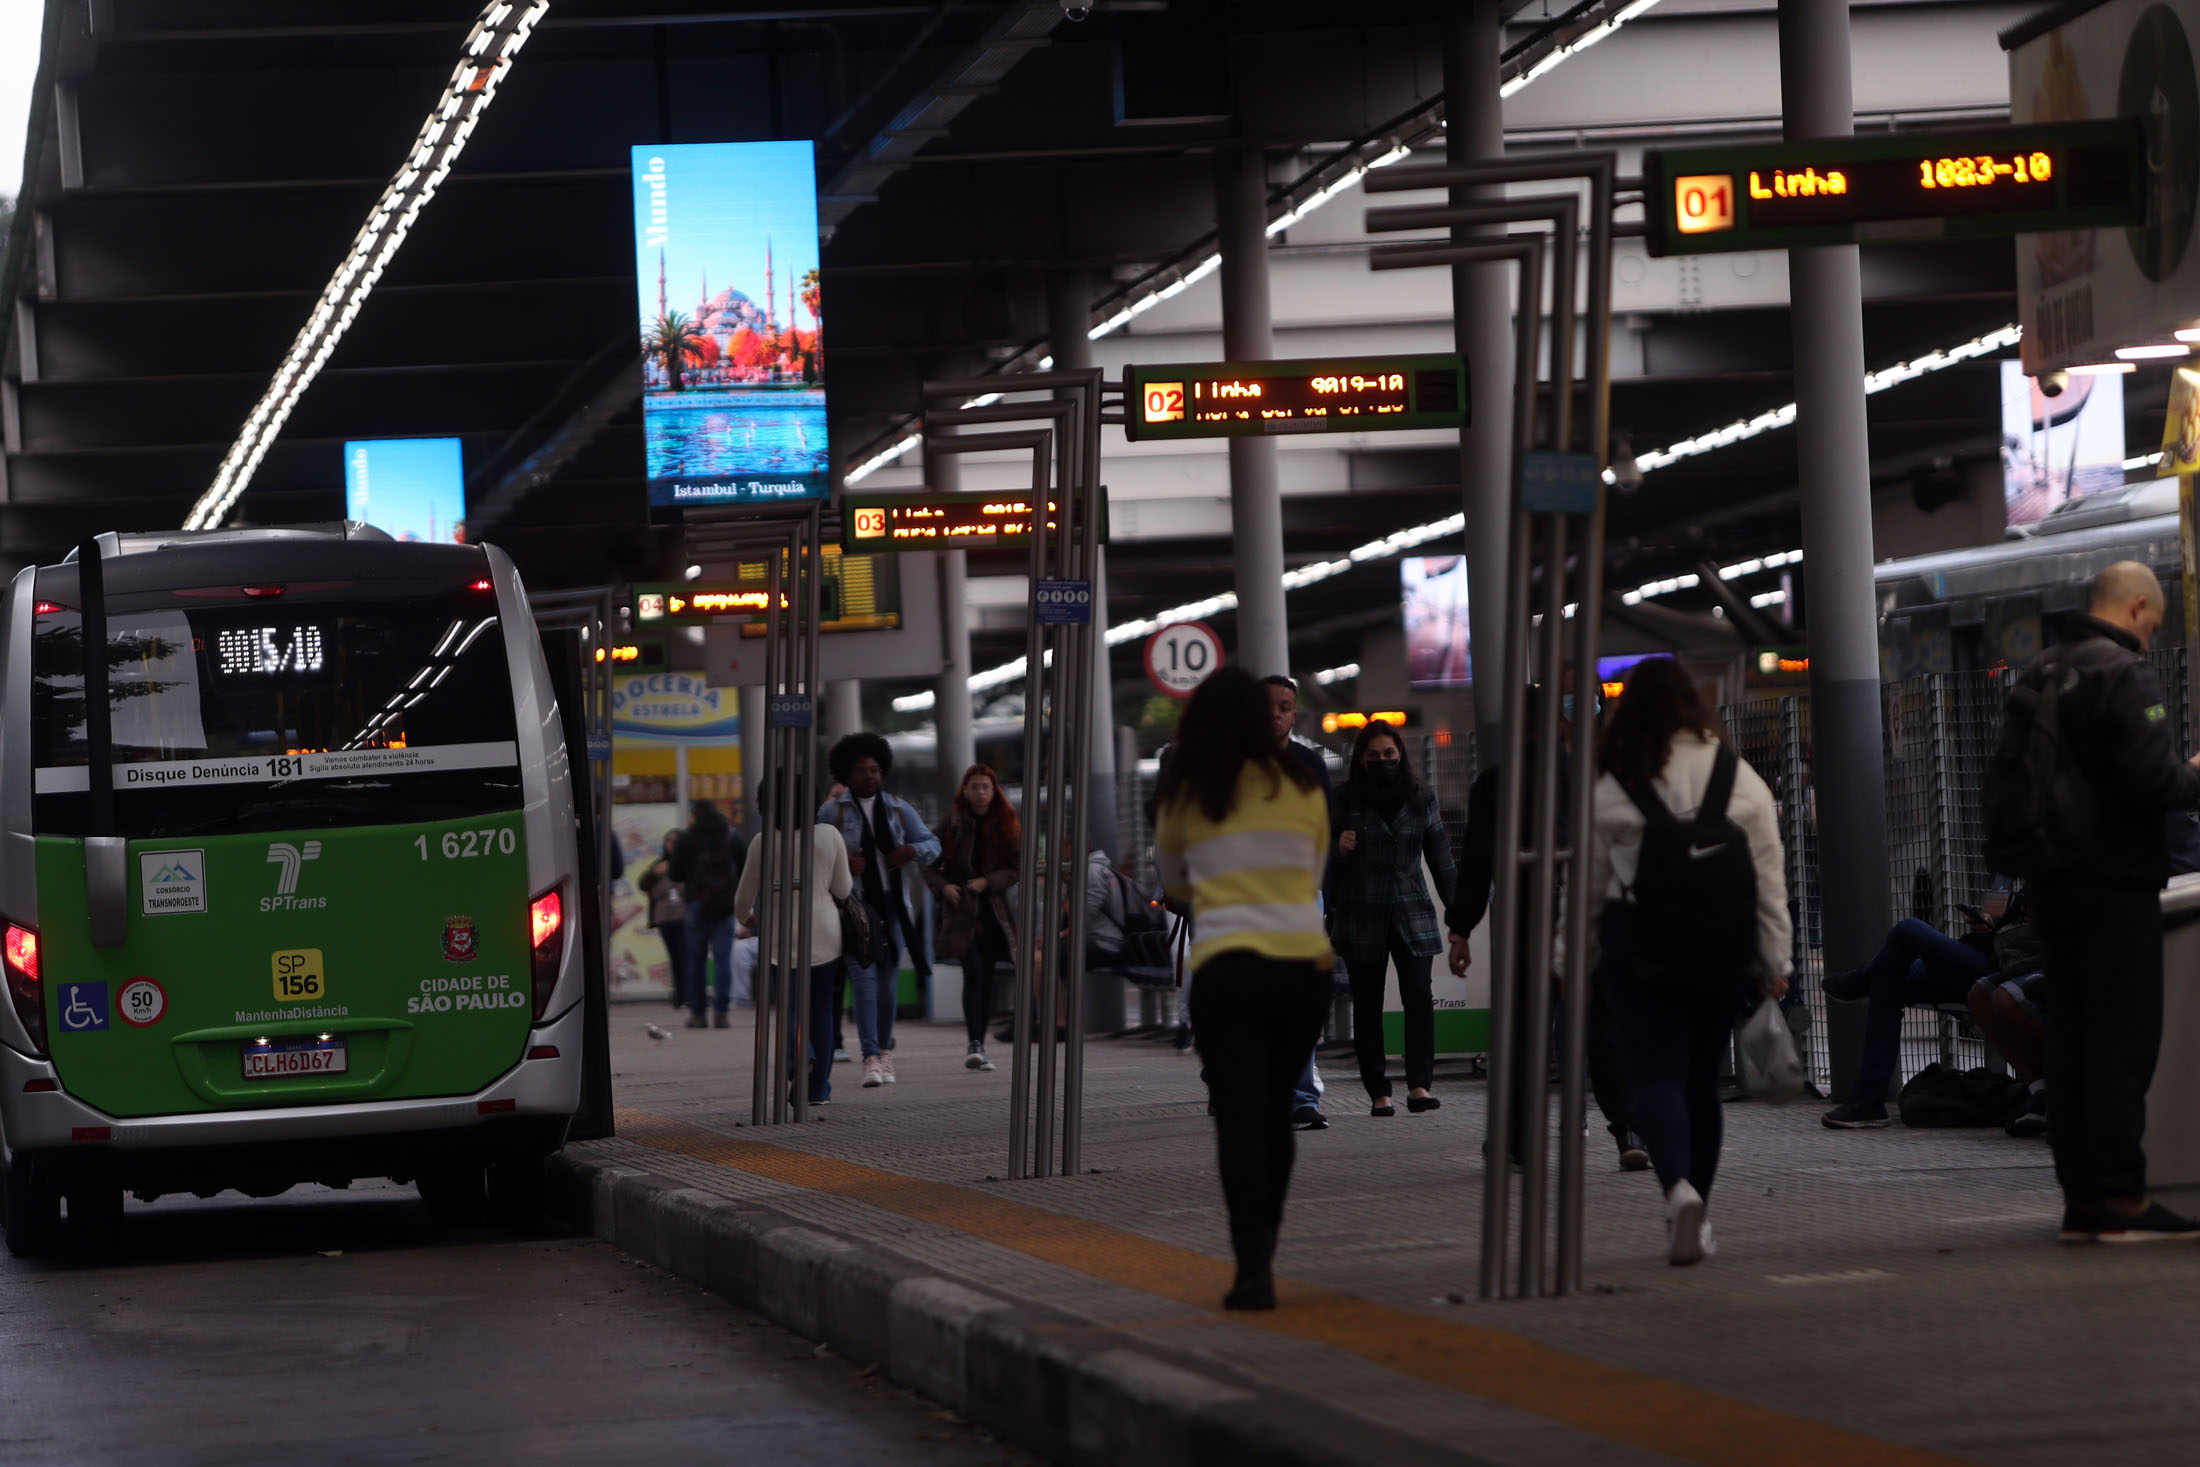 Crise política e transporte público em São Paulo: Como privatizações e reformas afetam o cidadão